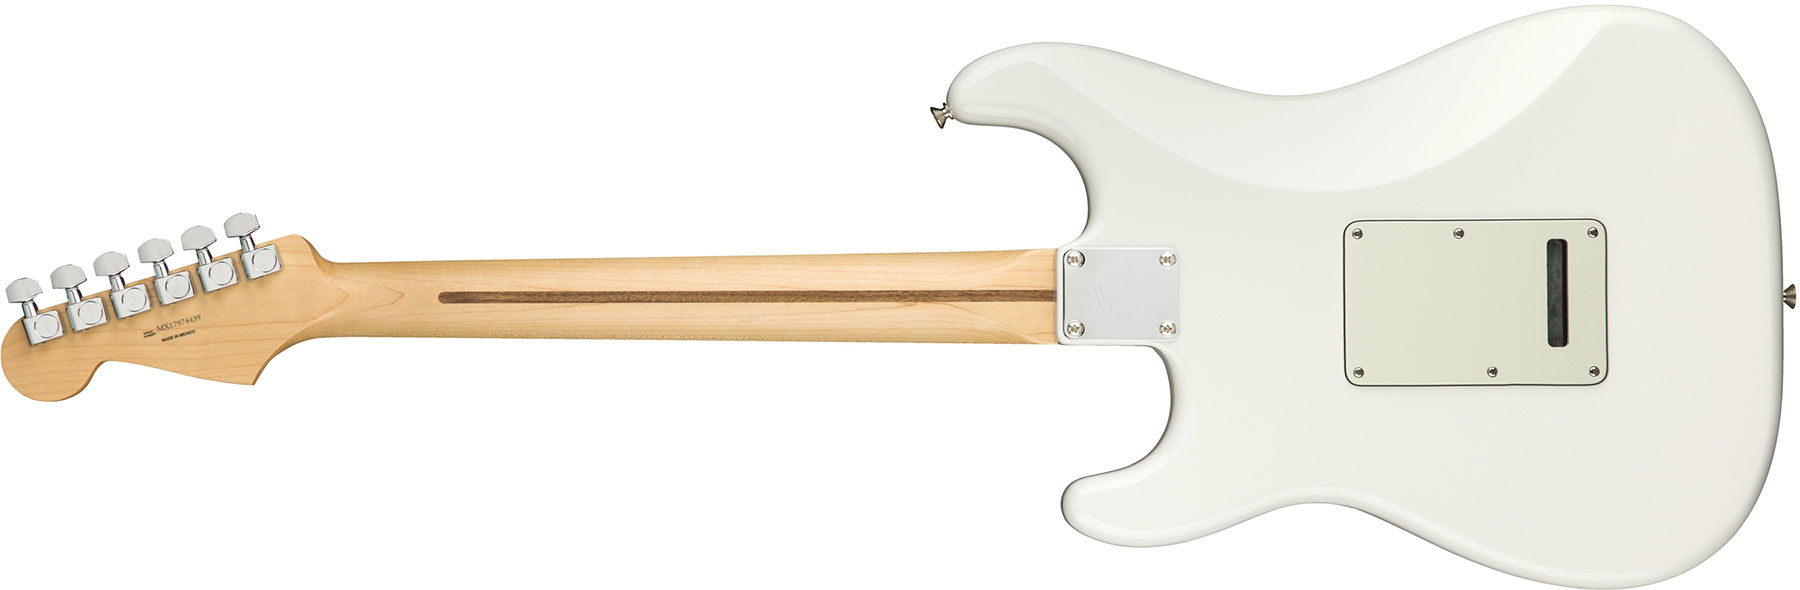 Fender Strat Player Mex Sss Pf - Polar White - E-Gitarre in Str-Form - Variation 1